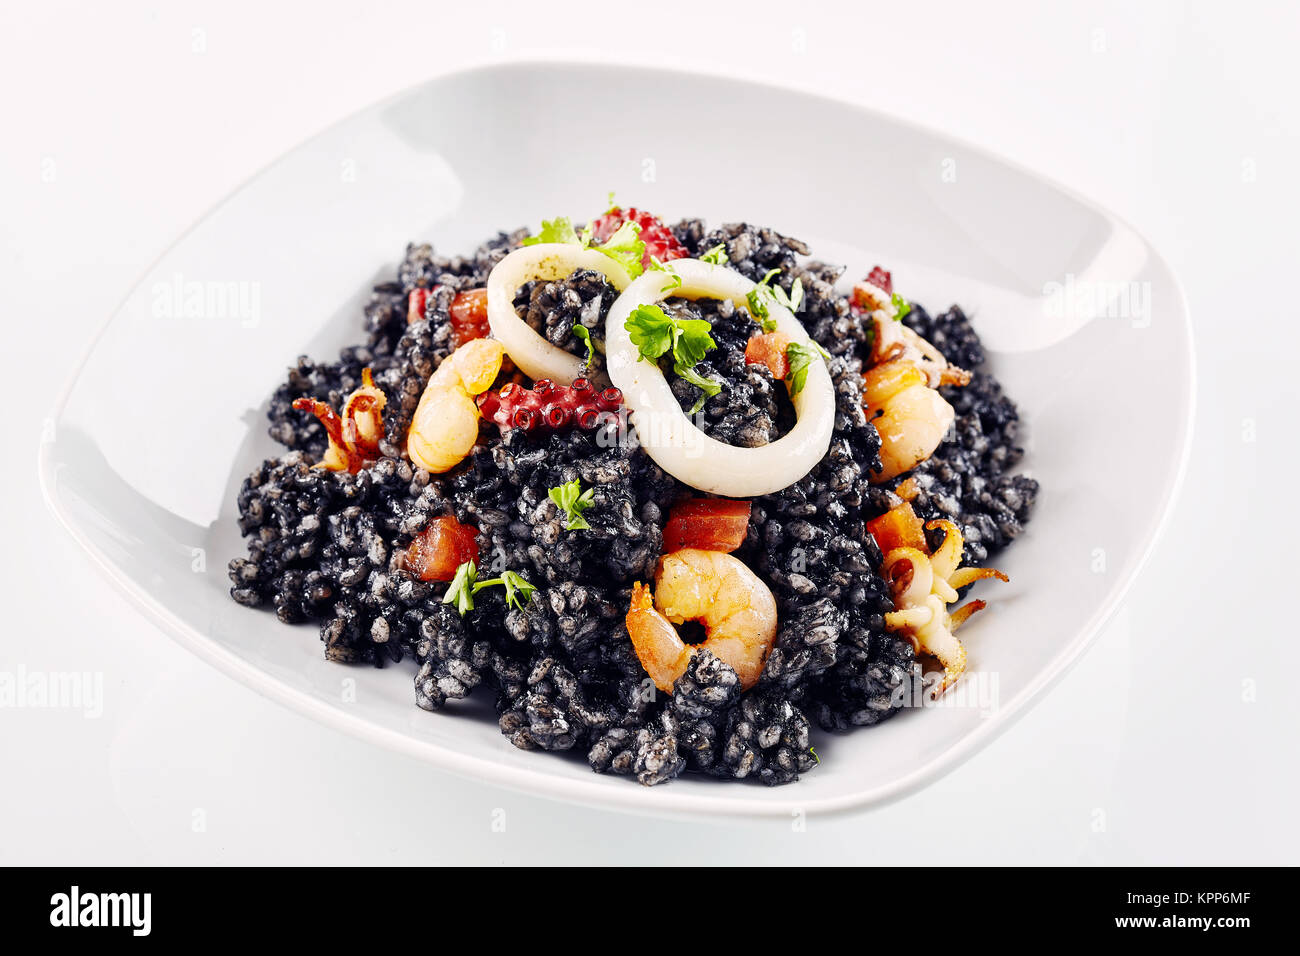 Chiusura del preparato di fresco arroz negro guarnita con vari tipi di  piatti a base di frutti di mare nel piatto bianco Foto stock - Alamy